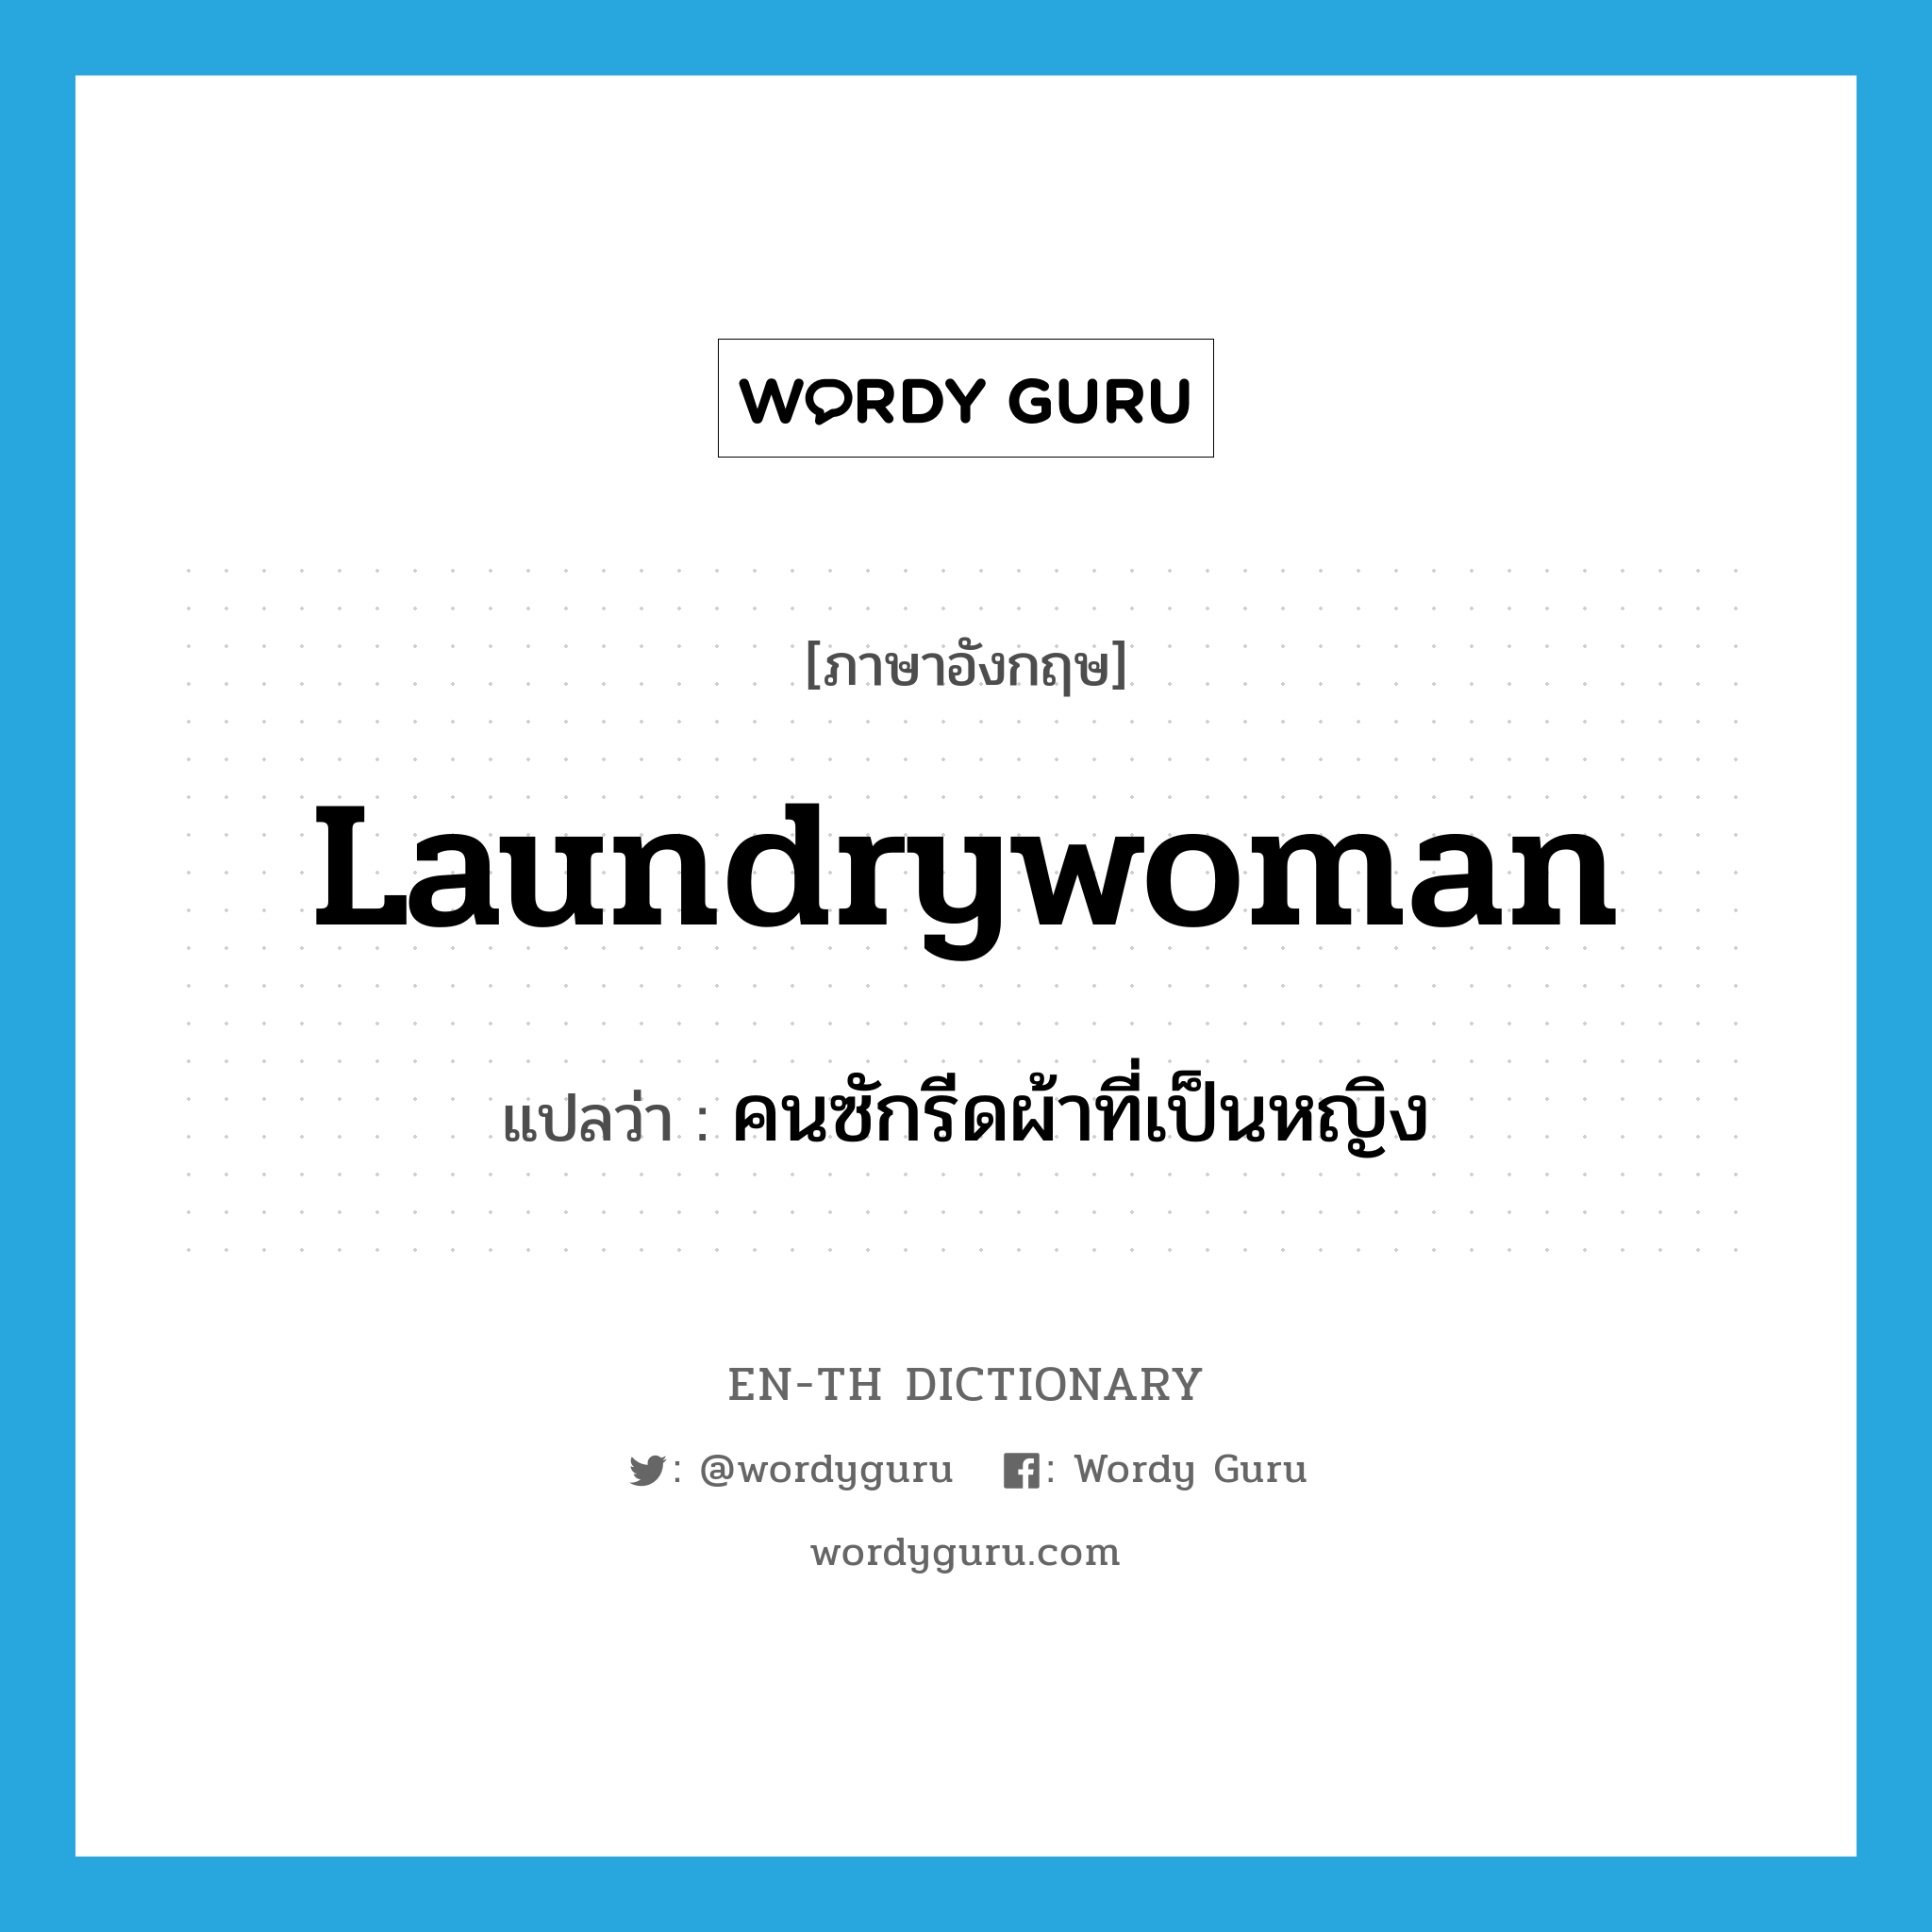 คนซักรีดผ้าที่เป็นหญิง ภาษาอังกฤษ?, คำศัพท์ภาษาอังกฤษ คนซักรีดผ้าที่เป็นหญิง แปลว่า laundrywoman ประเภท N หมวด N